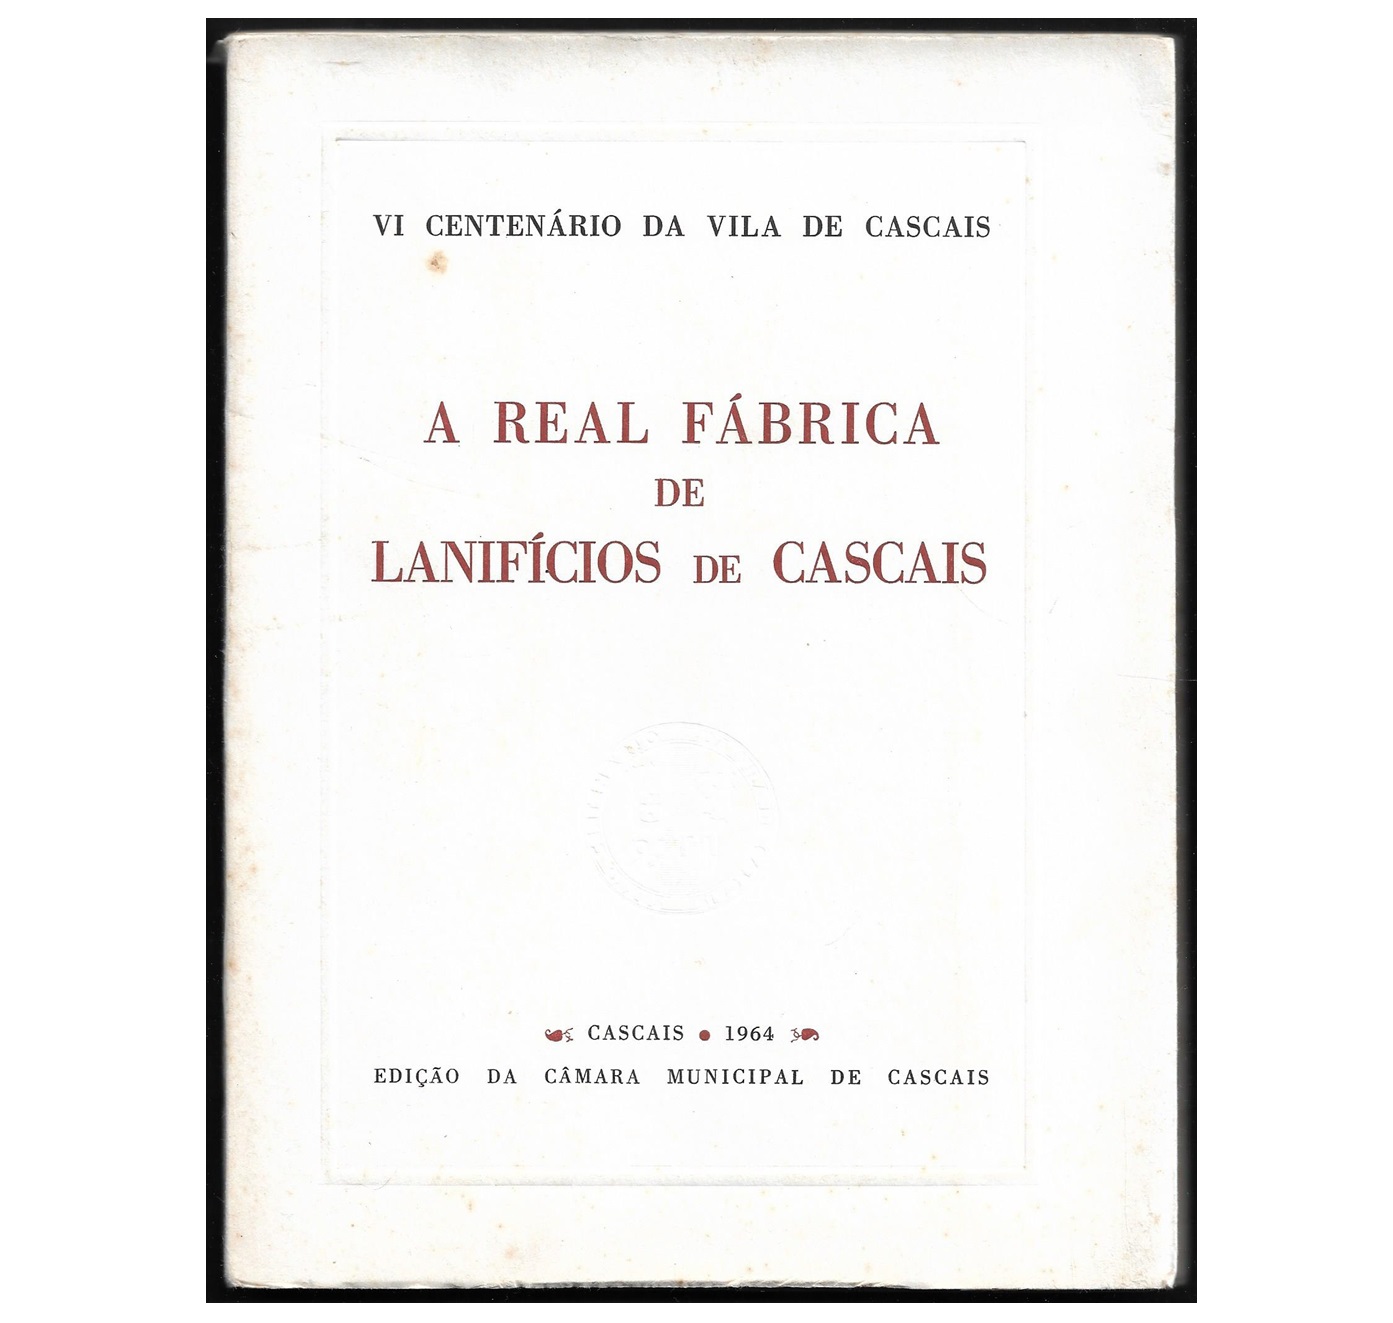 A REAL FÁBRICA DE LANIFÍCIOS DE CASCAIS